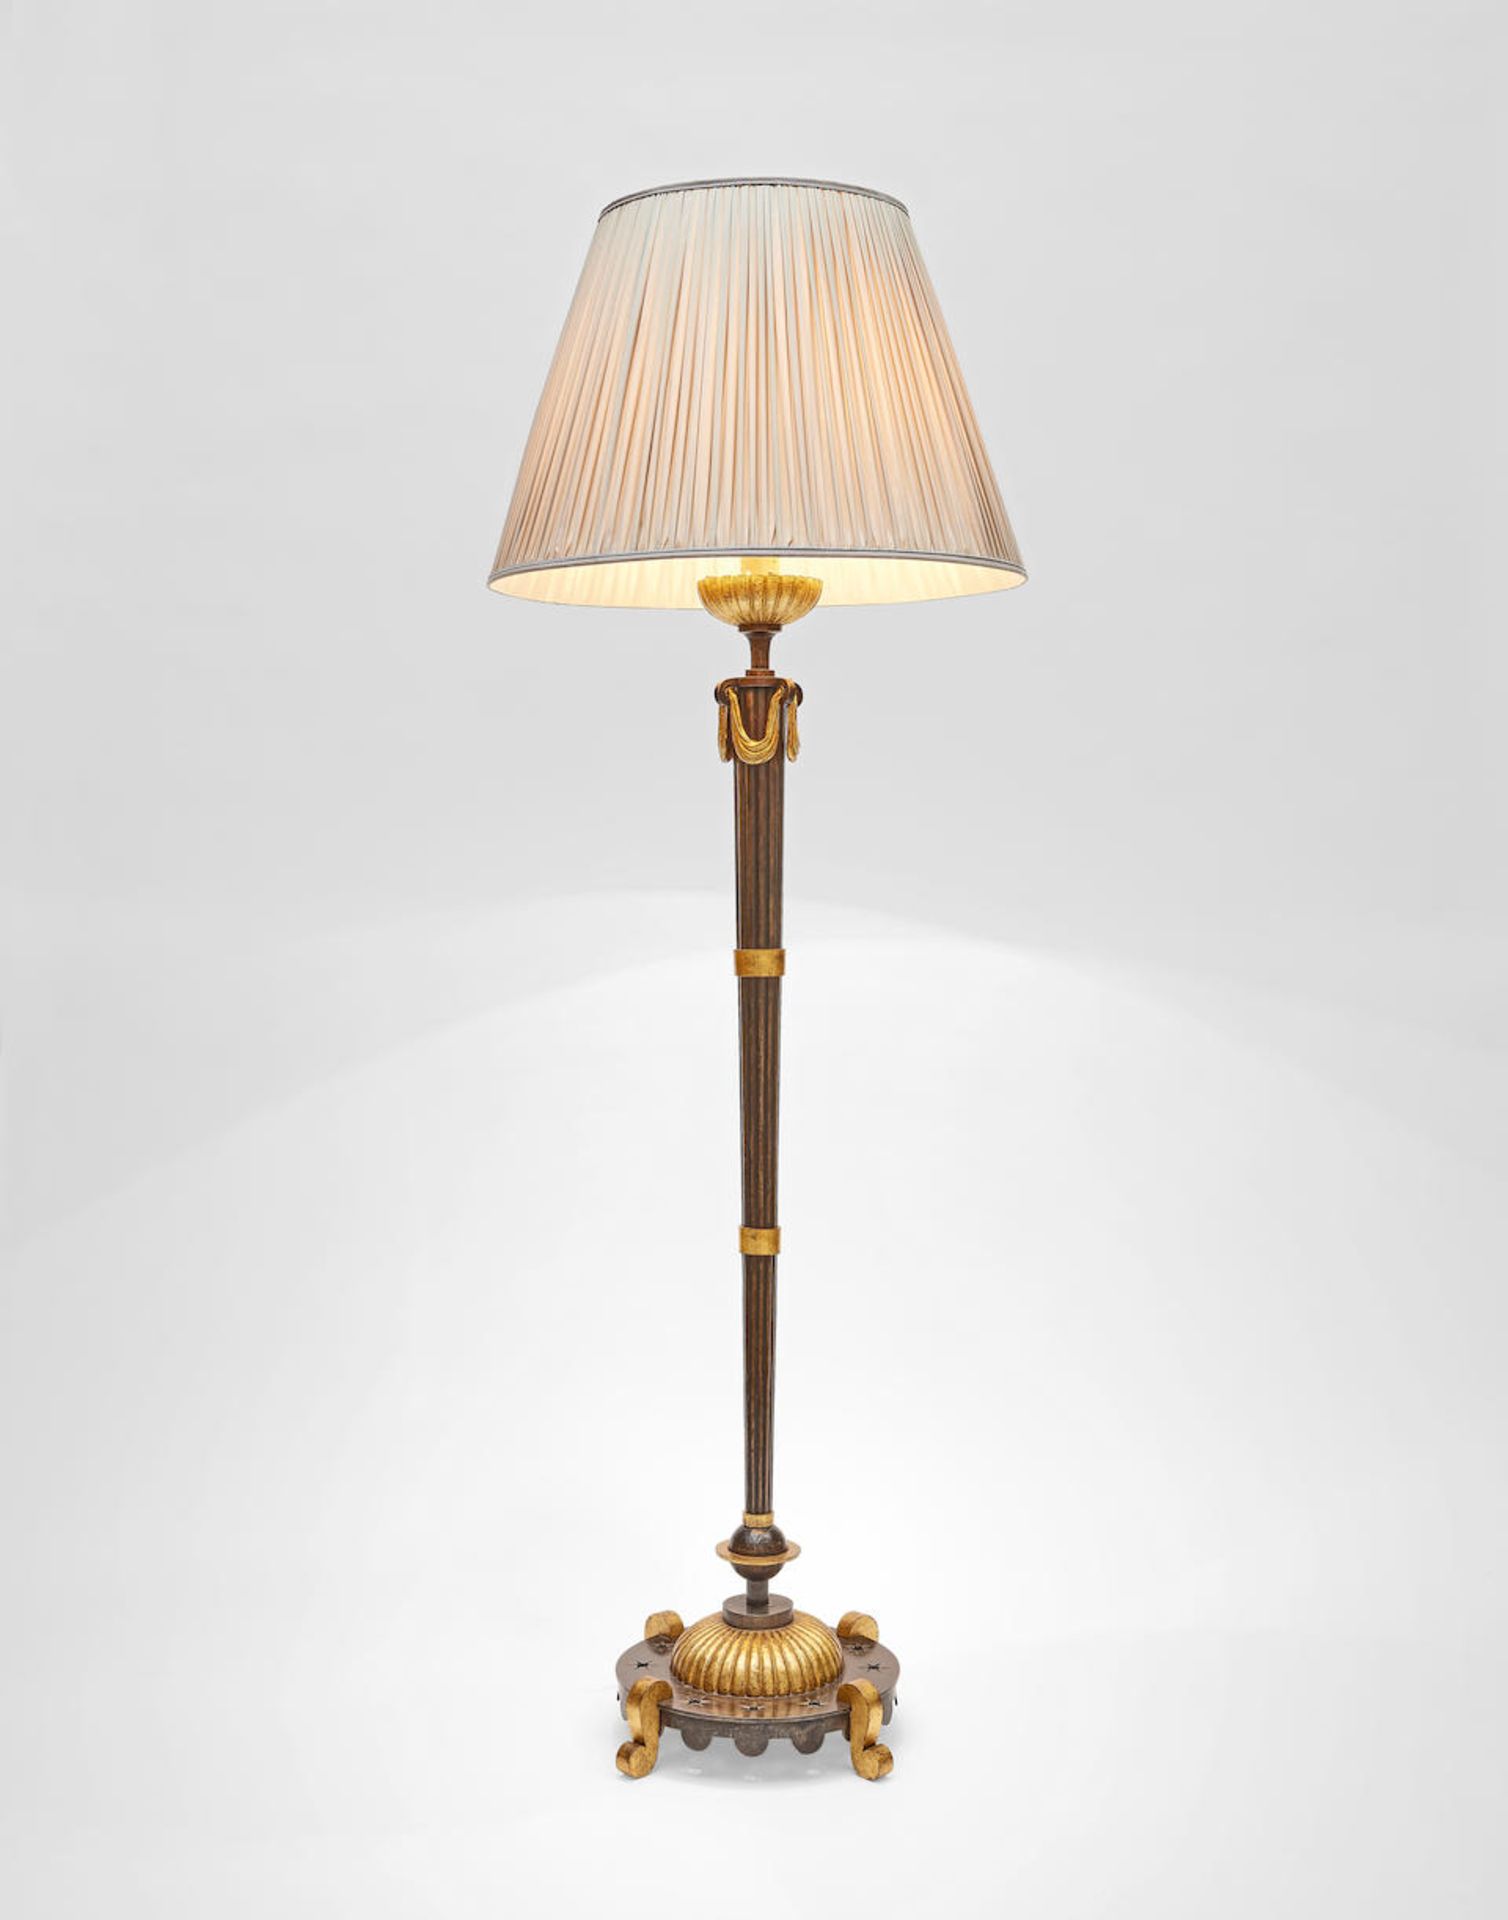 Gilbert Poillerat Standard lamp, circa 1946